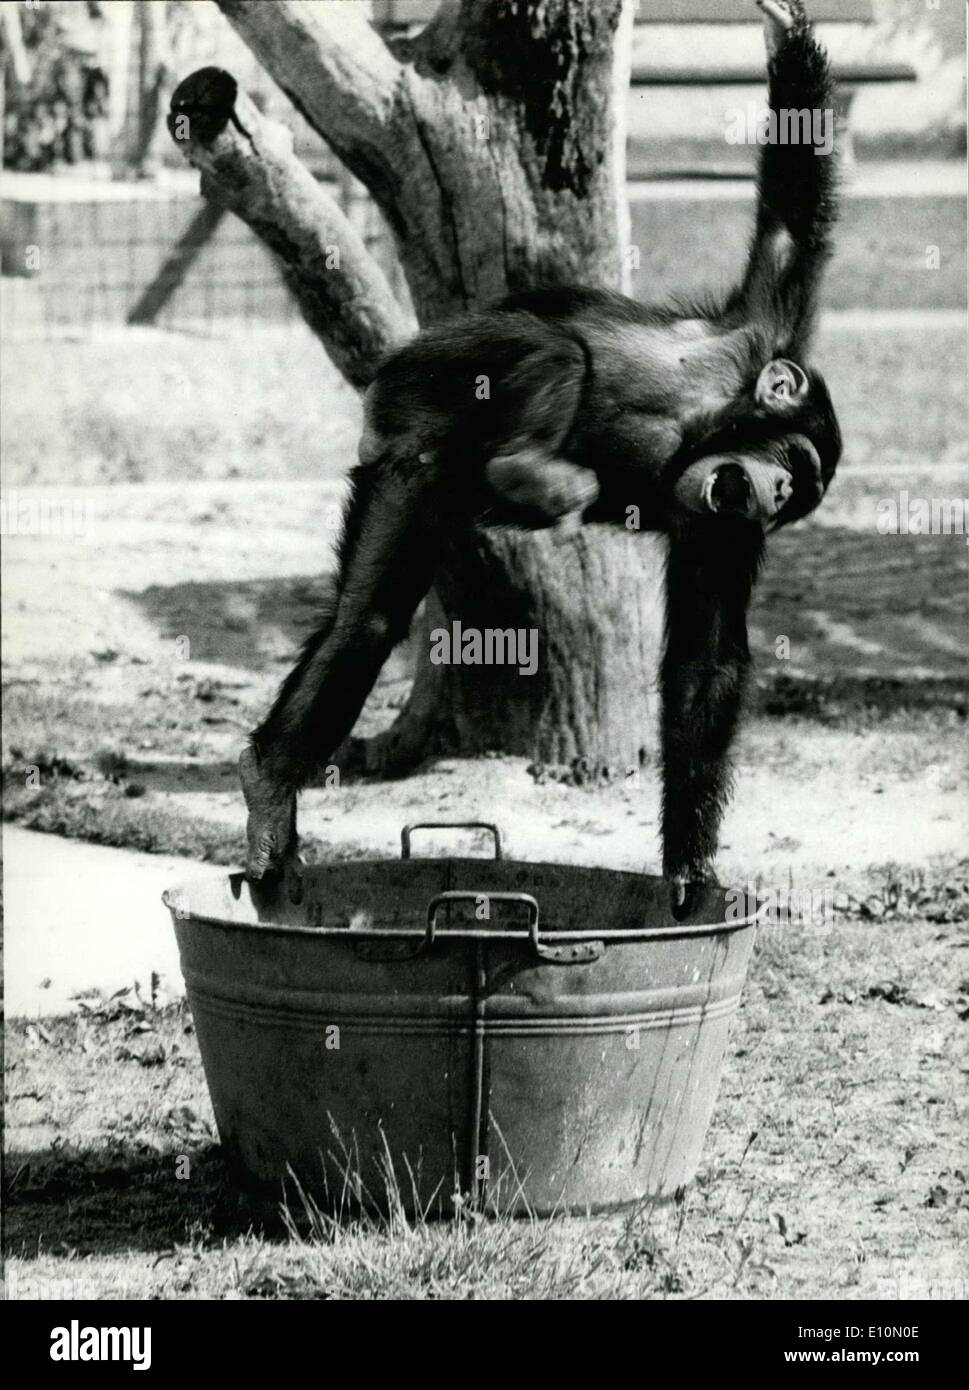 Lug. 03, 1973 - nella foto è uno scimpanzé rambunctious al zoo di Monaco. Nonostante il caldo torrido, chimp gira intorno, volare qui e là e godendo le cose. Foto Stock